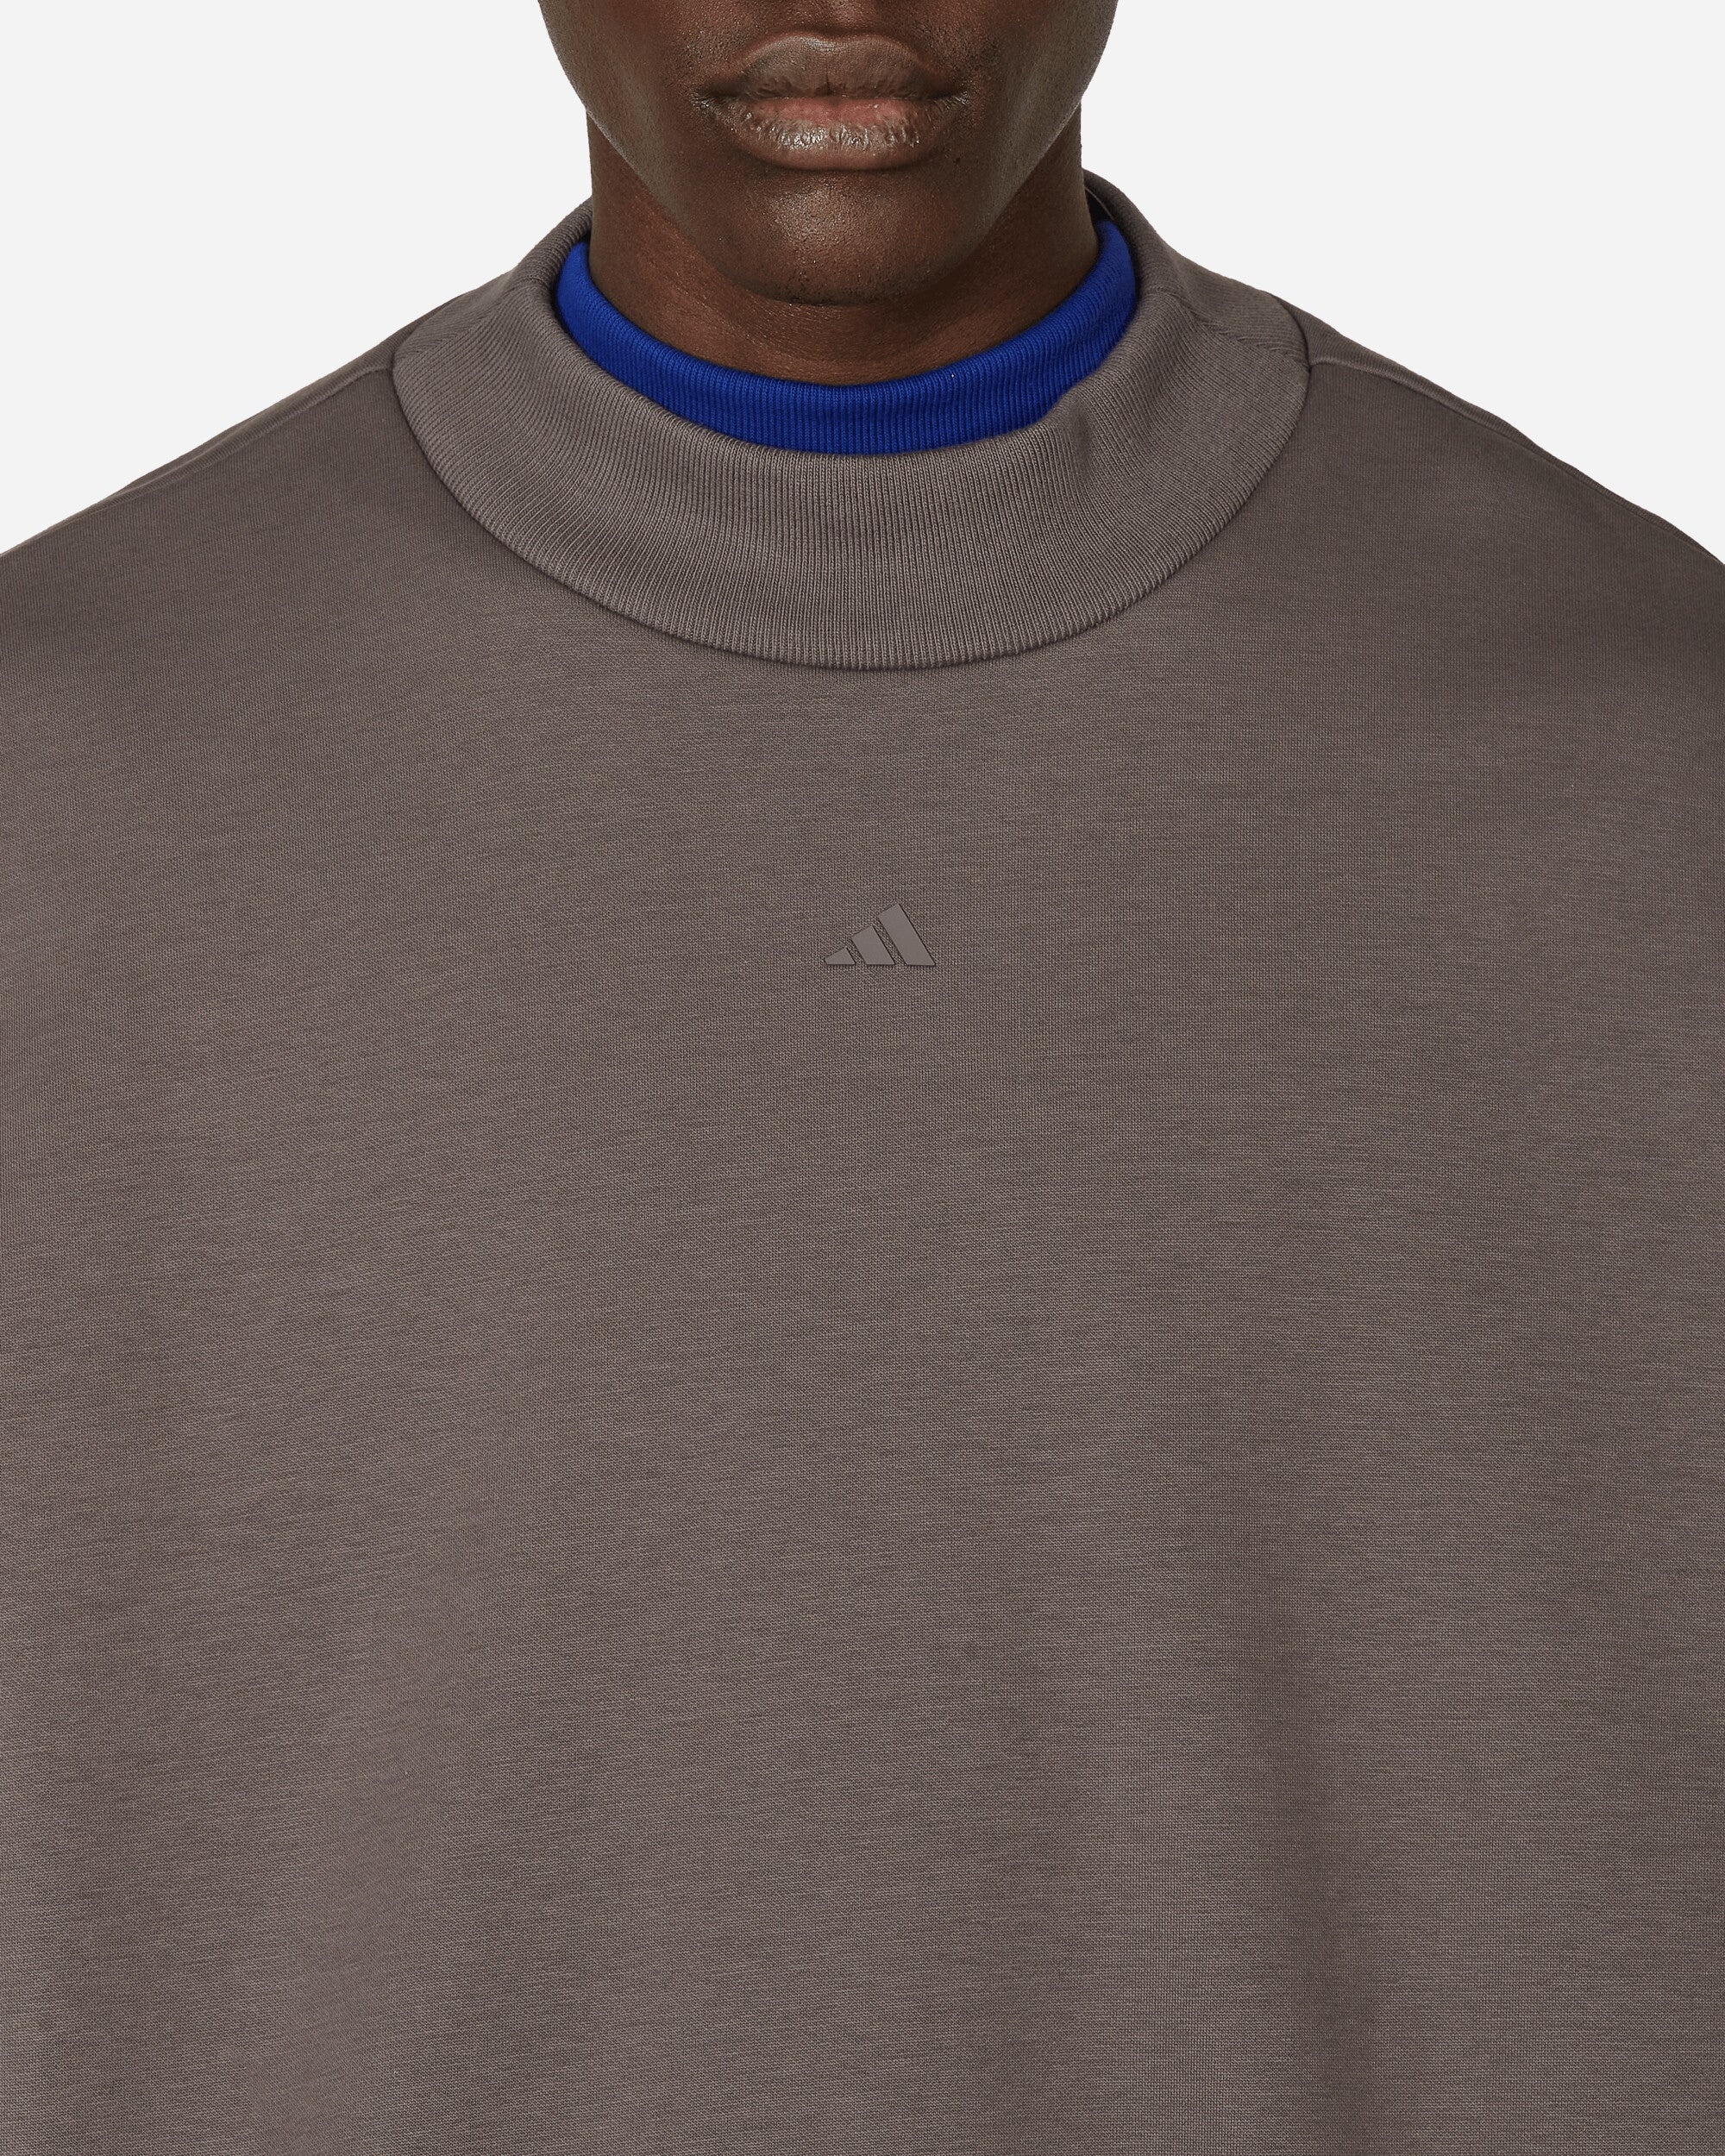 Basketball Crewneck Sweatshirt Charcoal - 5